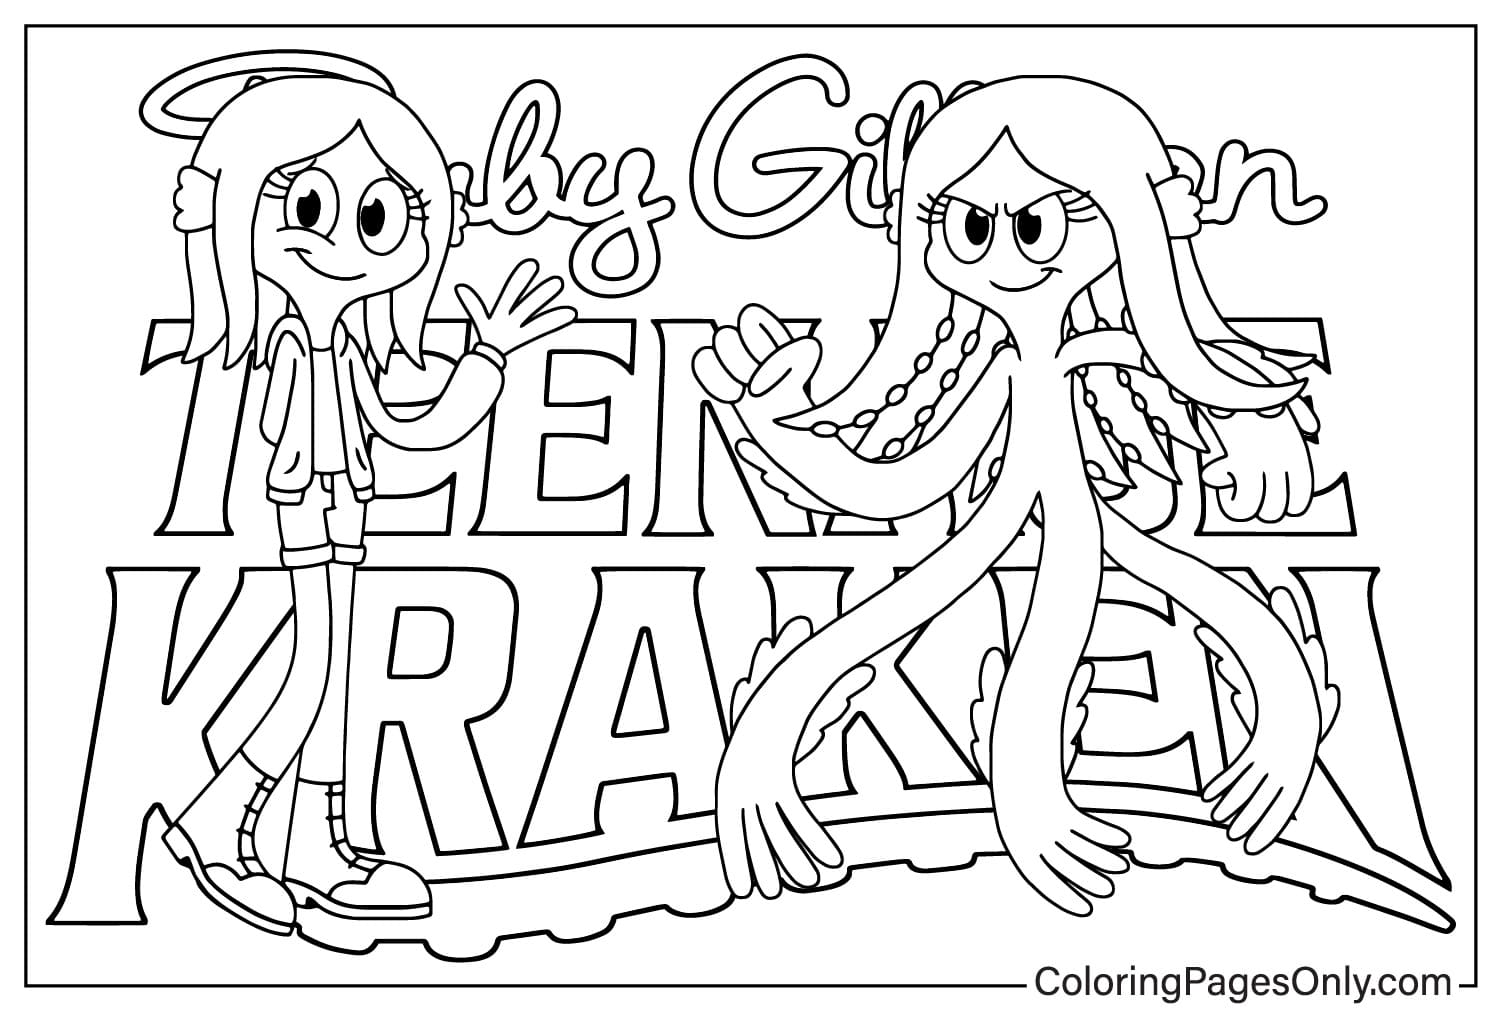 Página para colorear de Ruby Gillman Teenage Kraken para imprimir de Ruby Gillman Teenage Kraken